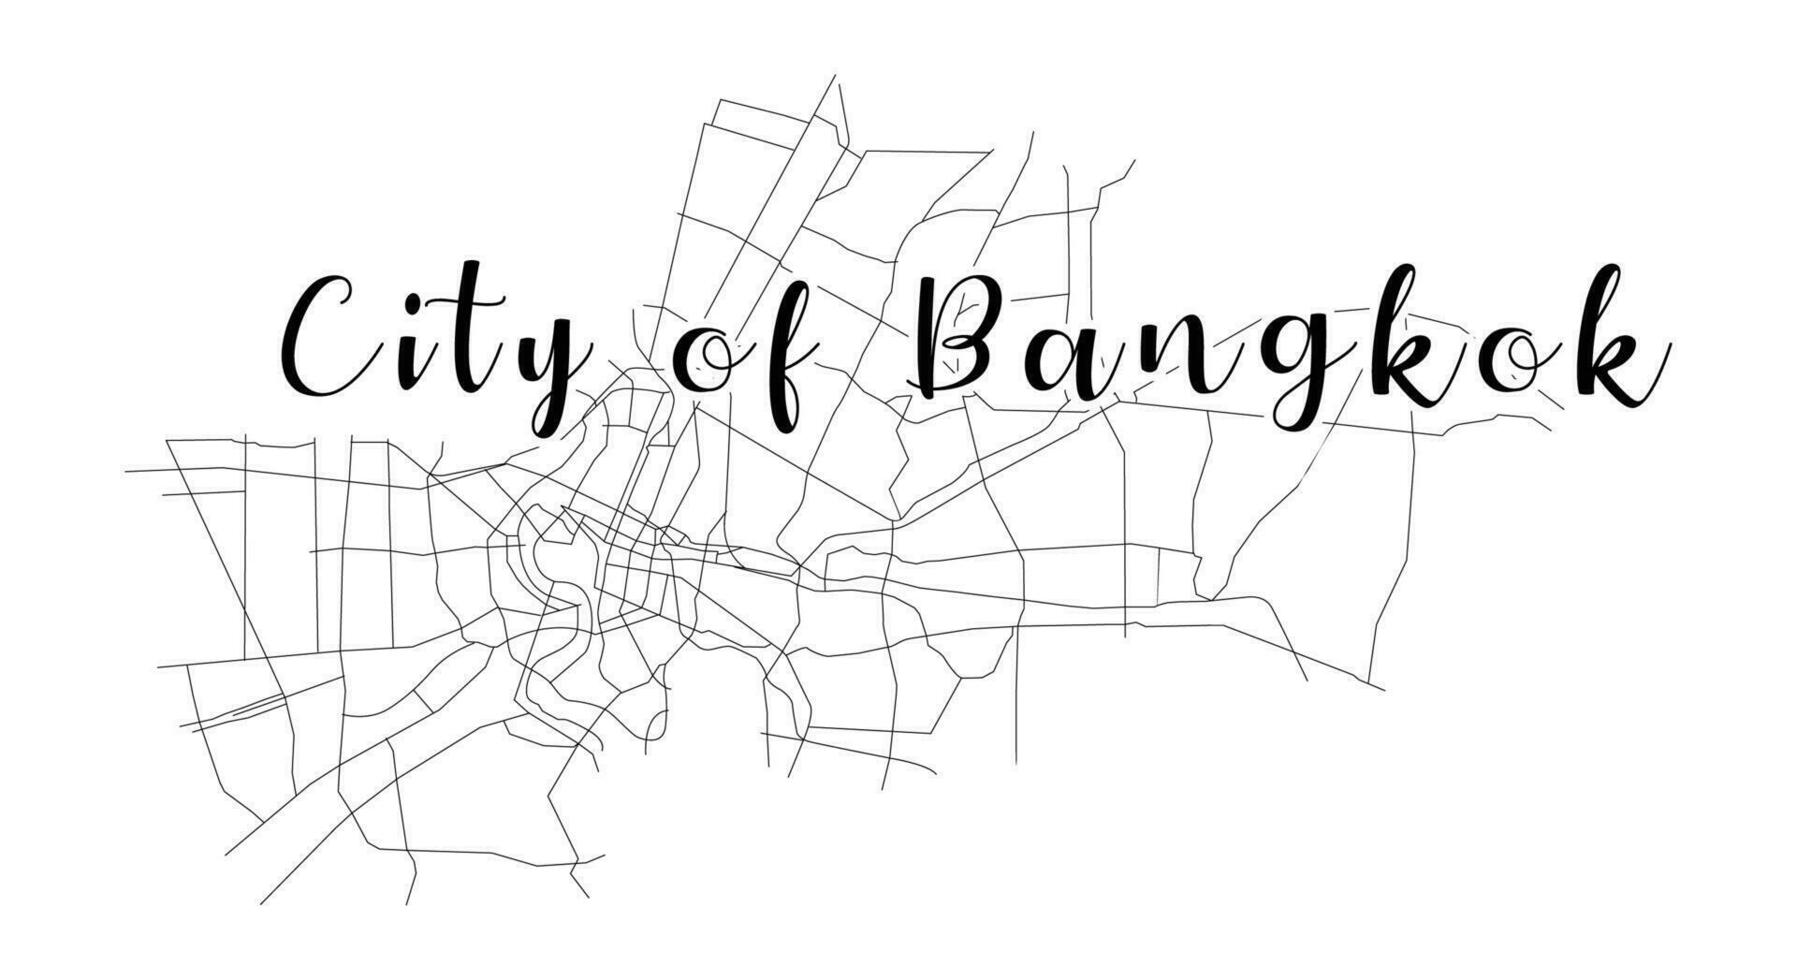 bangkok città Tailandia carta geografica con scritto titolo città di bangkok. viaggio ricordi vettore